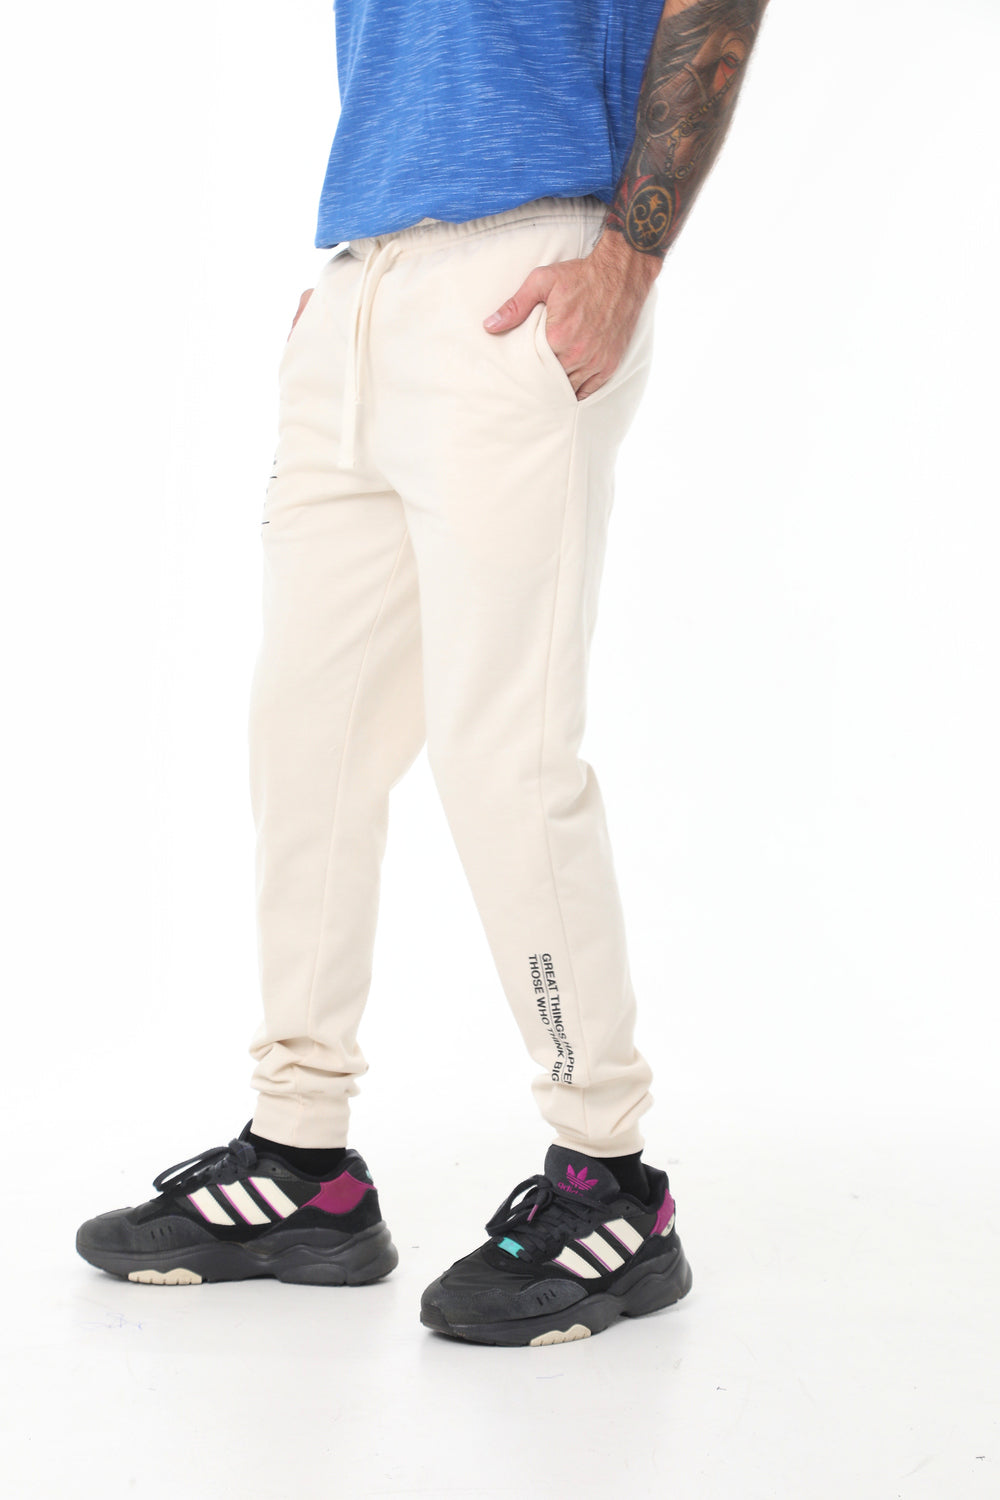 Pantalón tipo jogger blanco crema, silueta semi-ajustada, estampado en pierna y bota para hombre